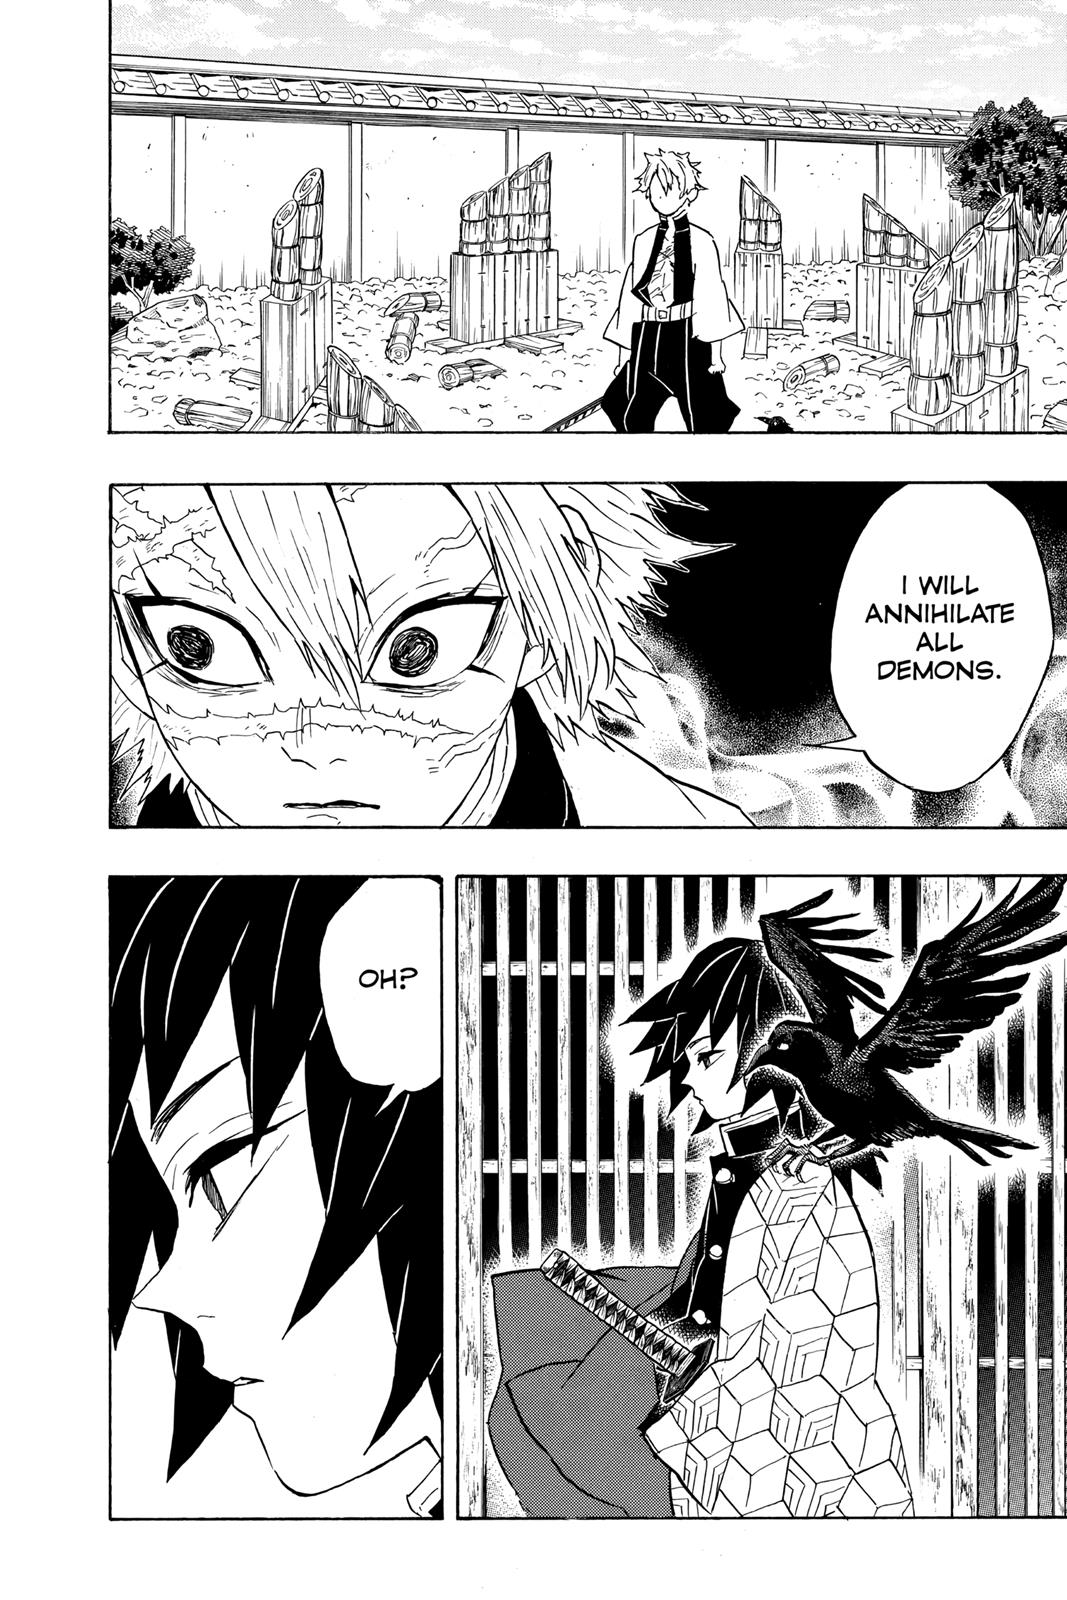 Demon Slayer Manga Manga Chapter - 66 - image 19